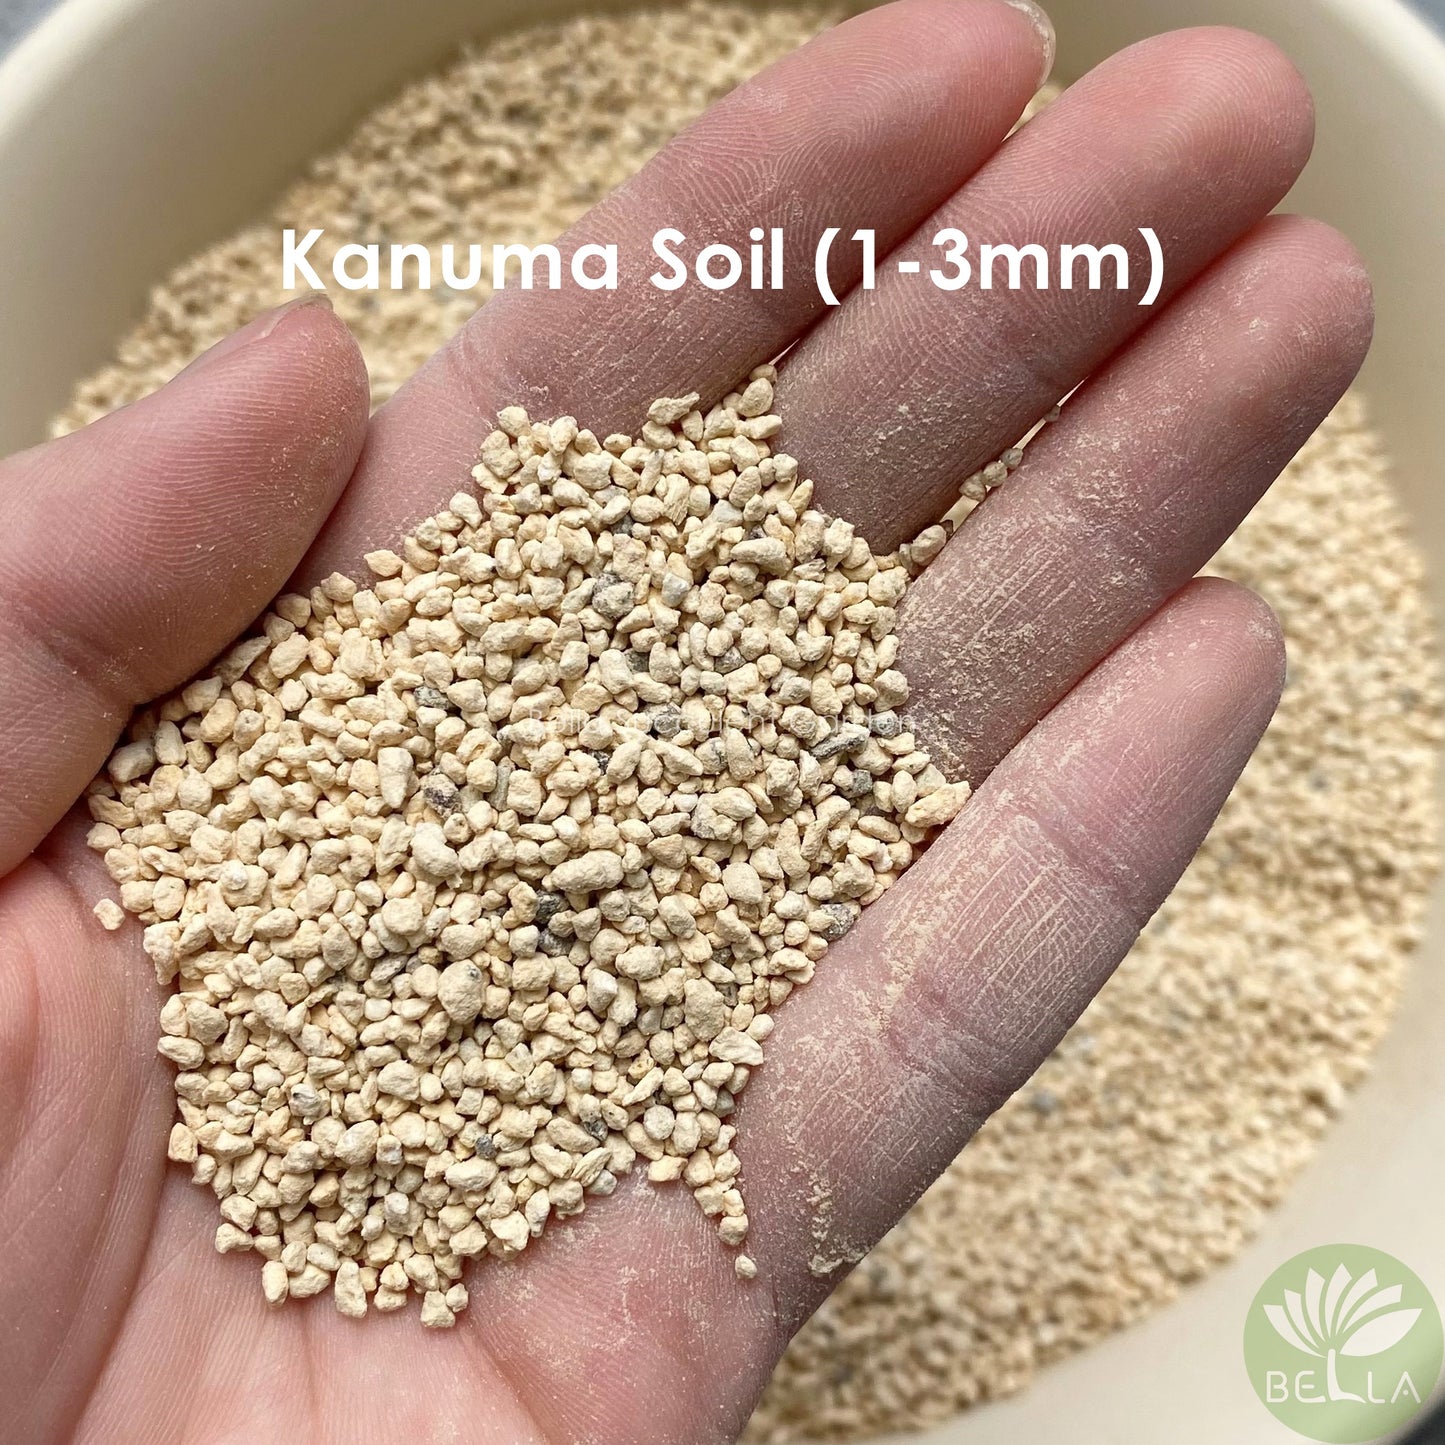 鹿沼土 (Kanuma Soil)